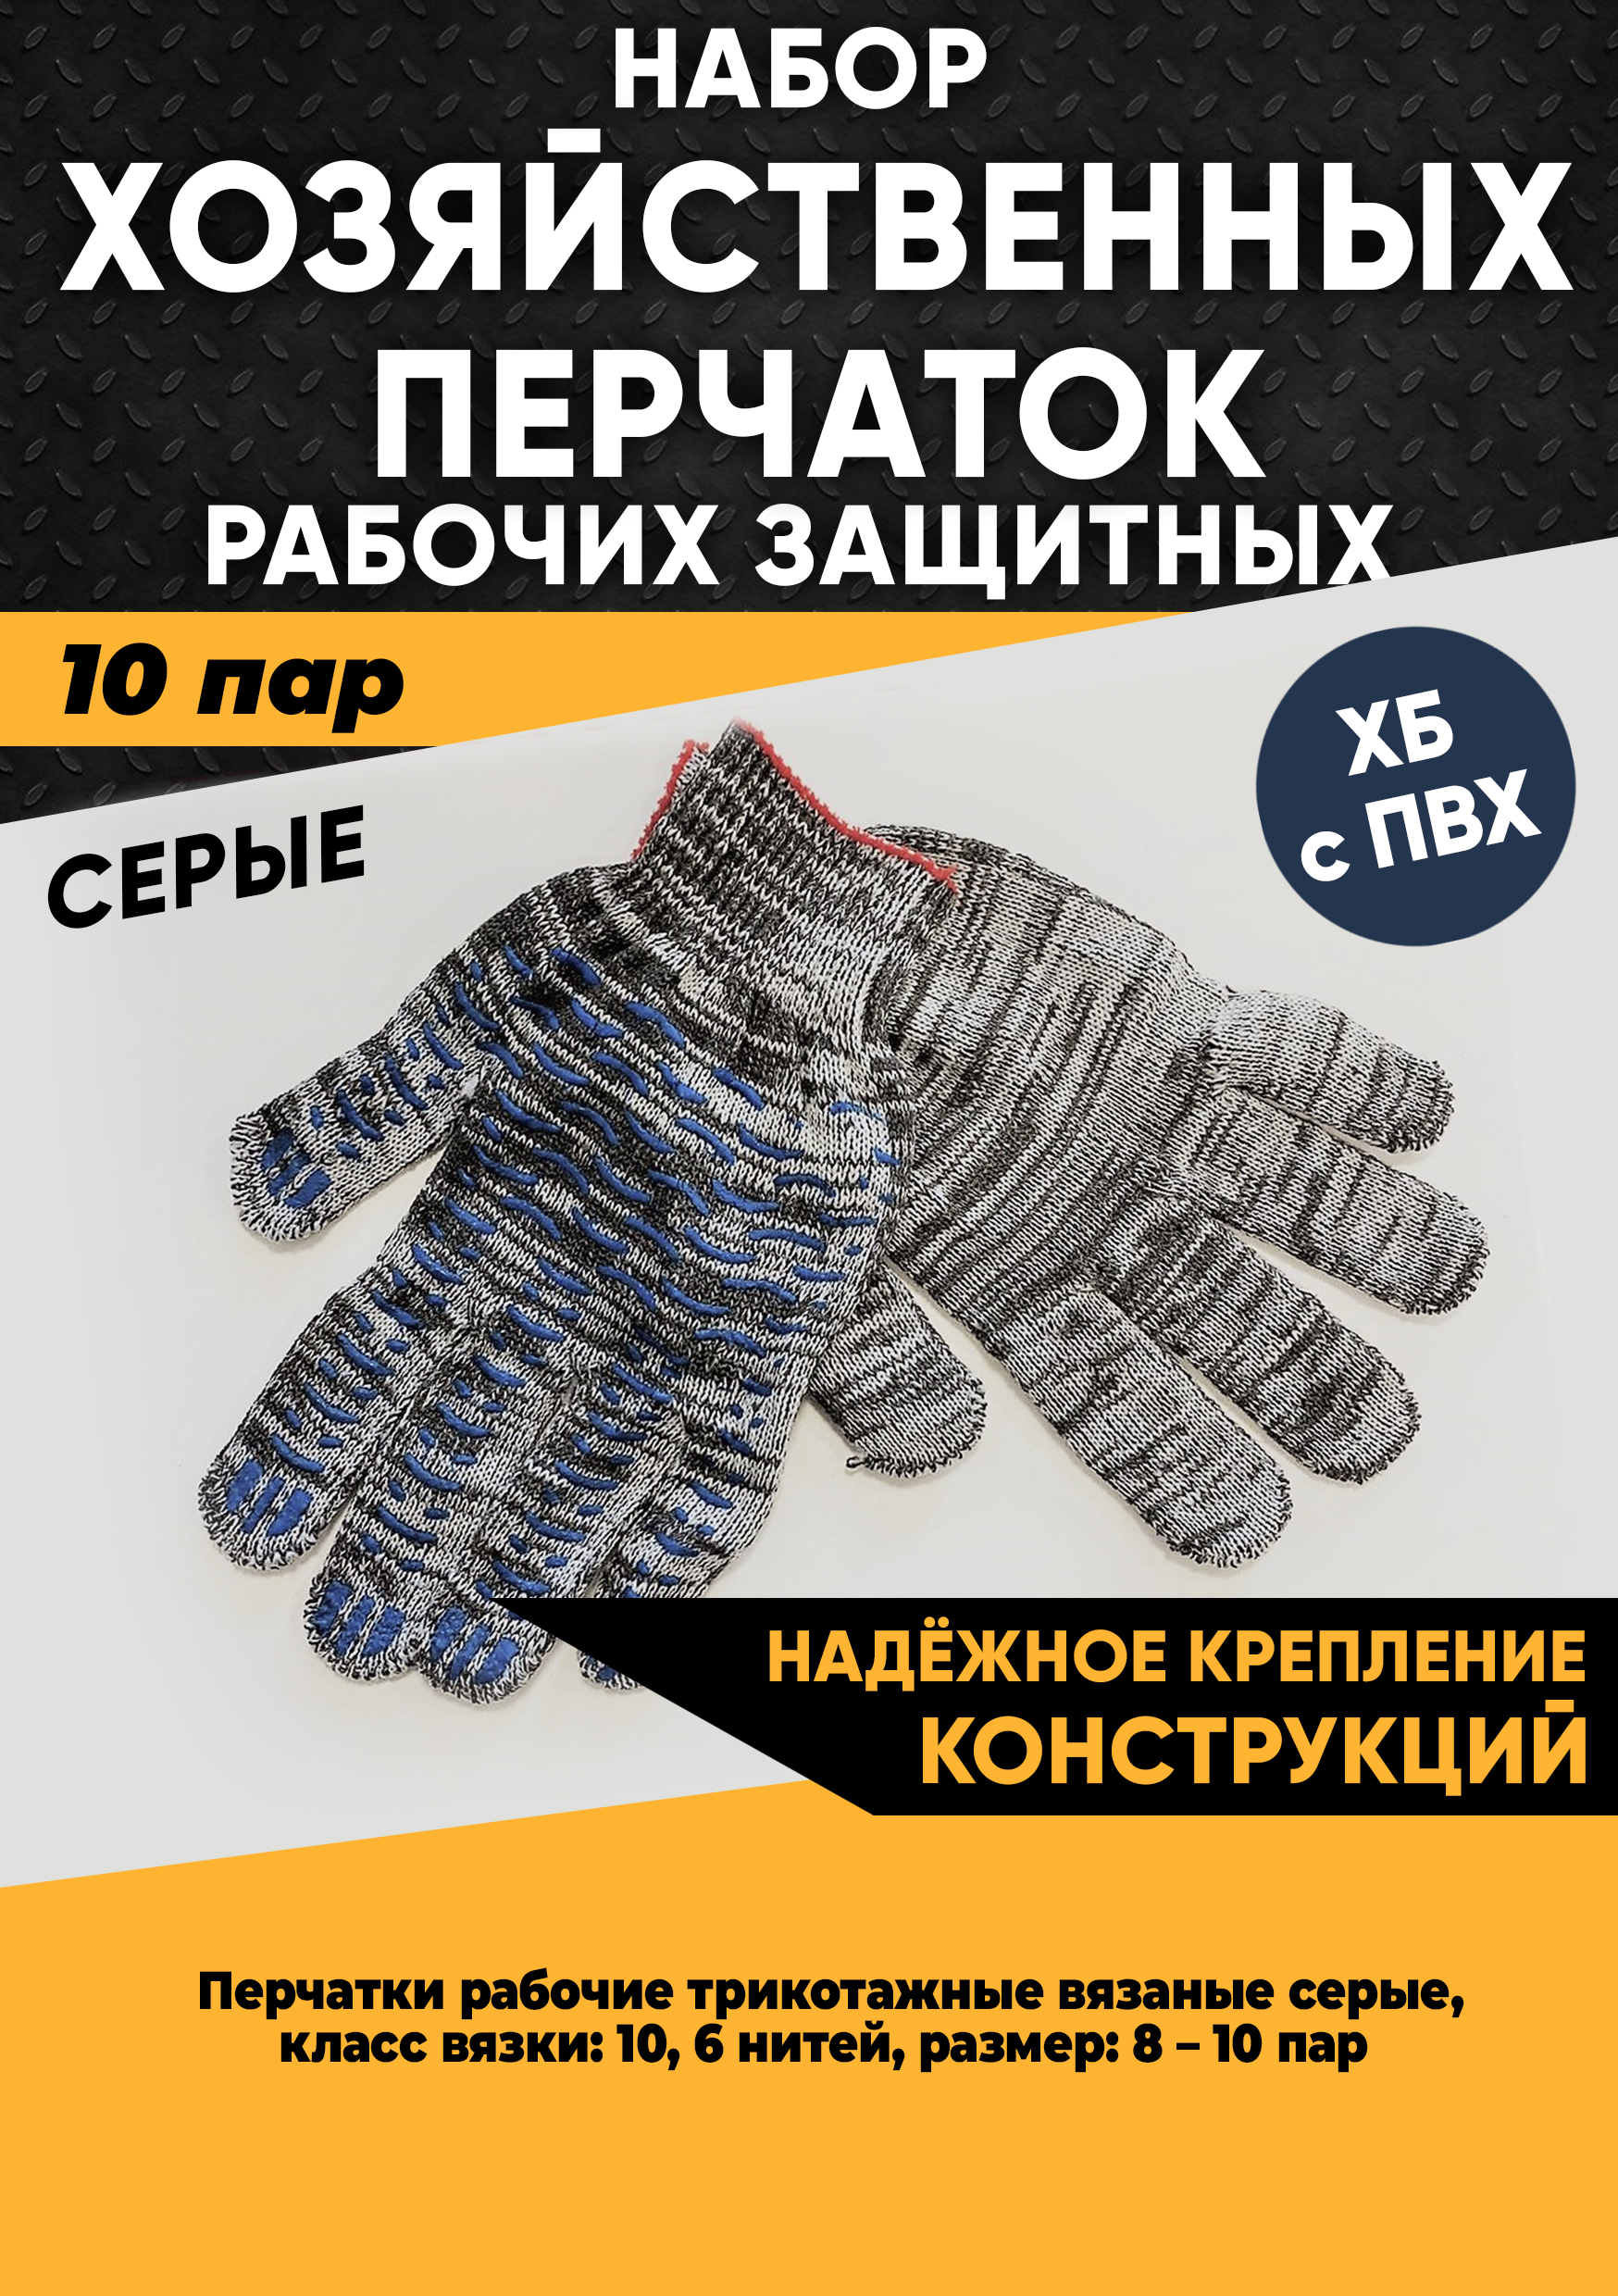 Хозяйственные перчатки KraSimall рабочие защитные ХБ с ПВХ, 6 нитей, серые, 10 пар, 100265 хозяйственные перчатки фабрика перчаток